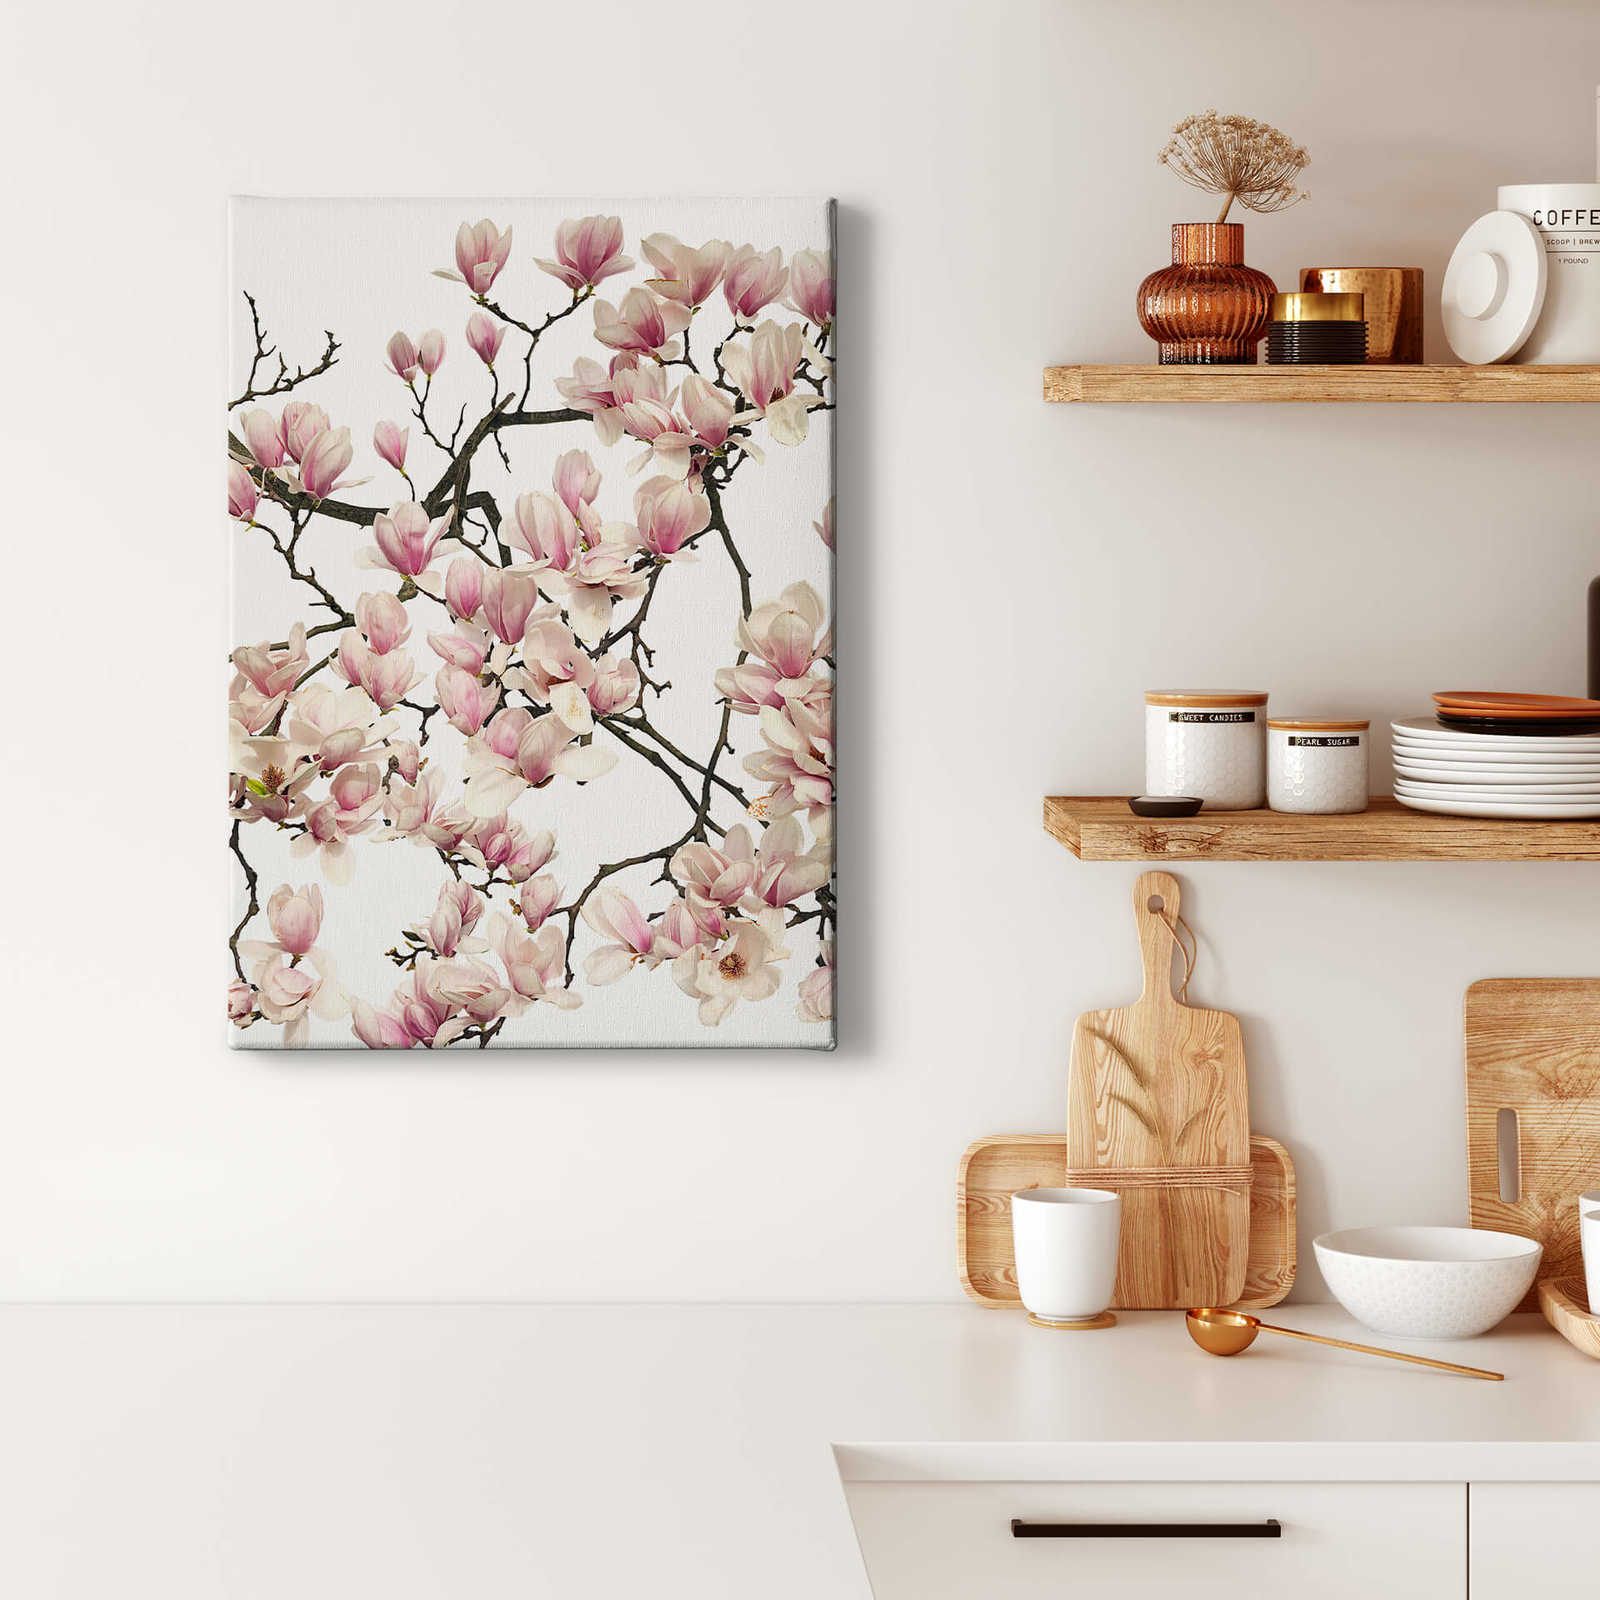             Tableau Kadam sur toile Cerisier en fleurs au printemps - 0,50 m x 0,70 m
        